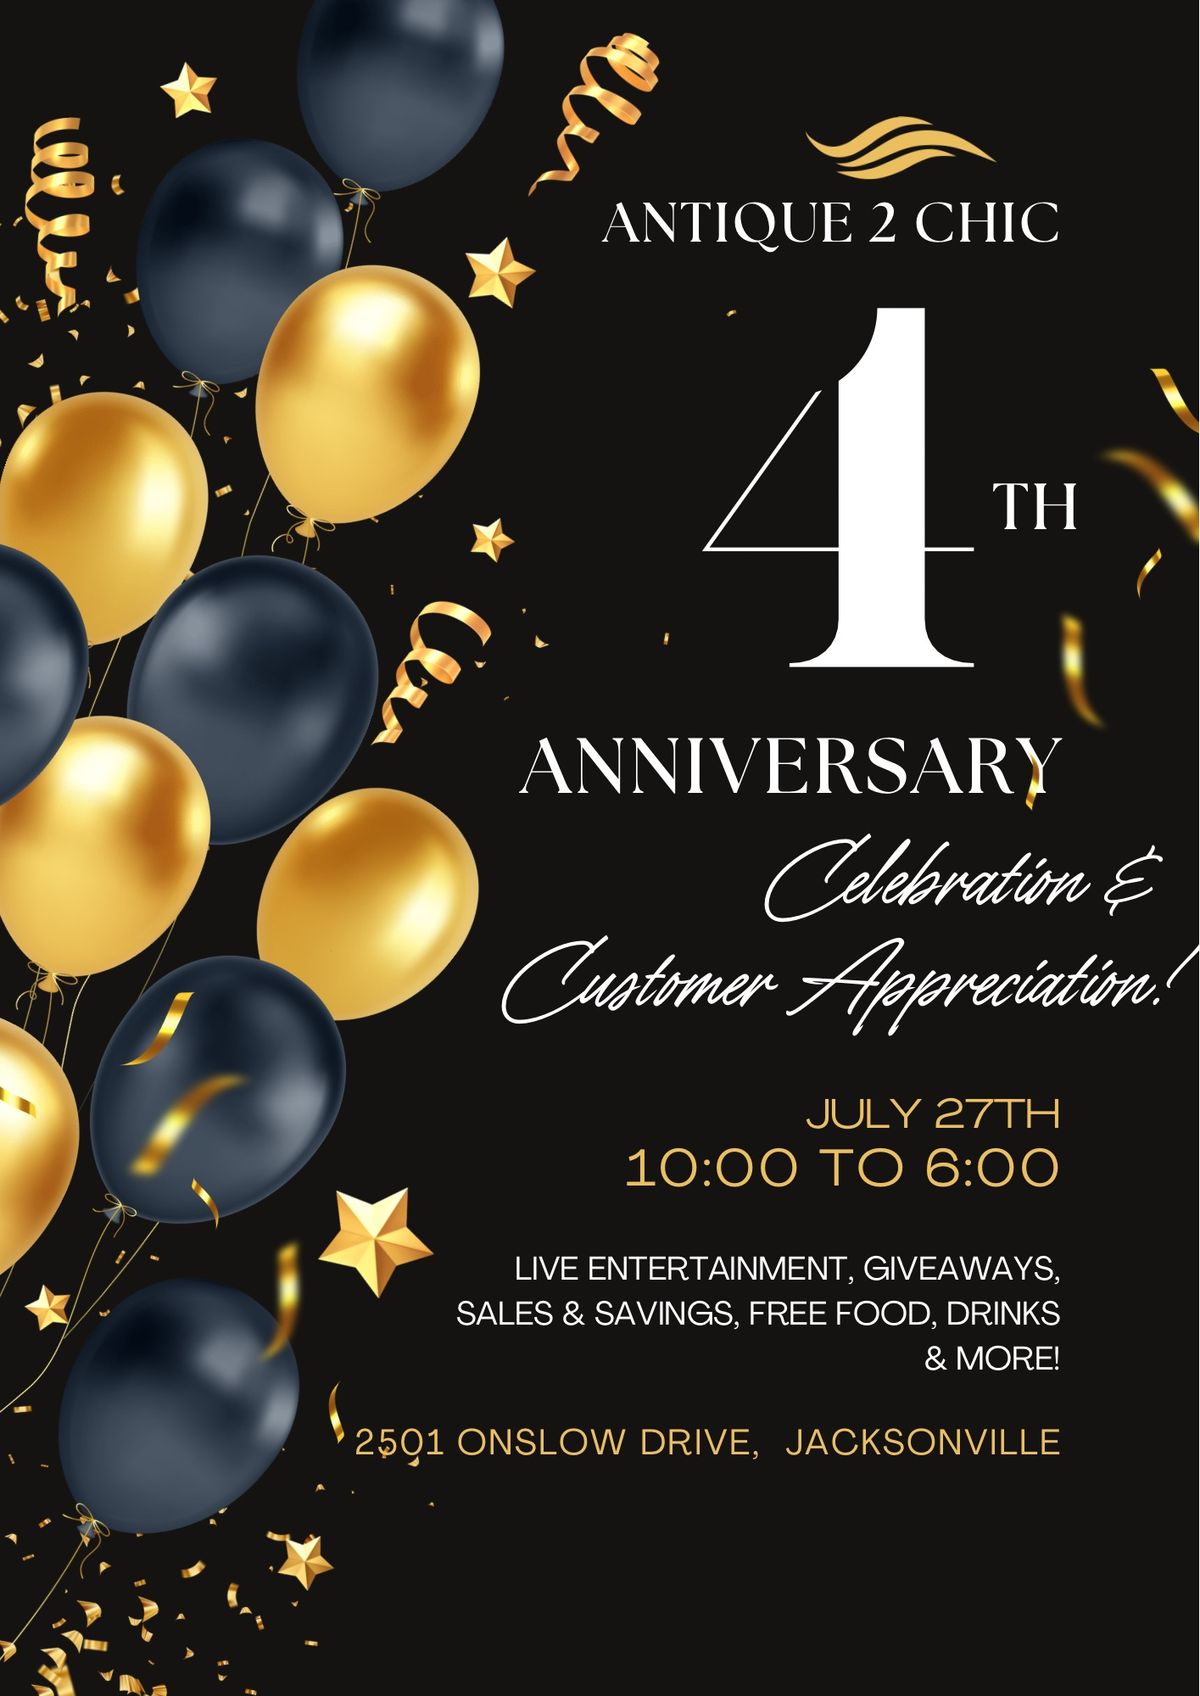 A2C 4th Anniversary Celebration & Customer Appreciation!